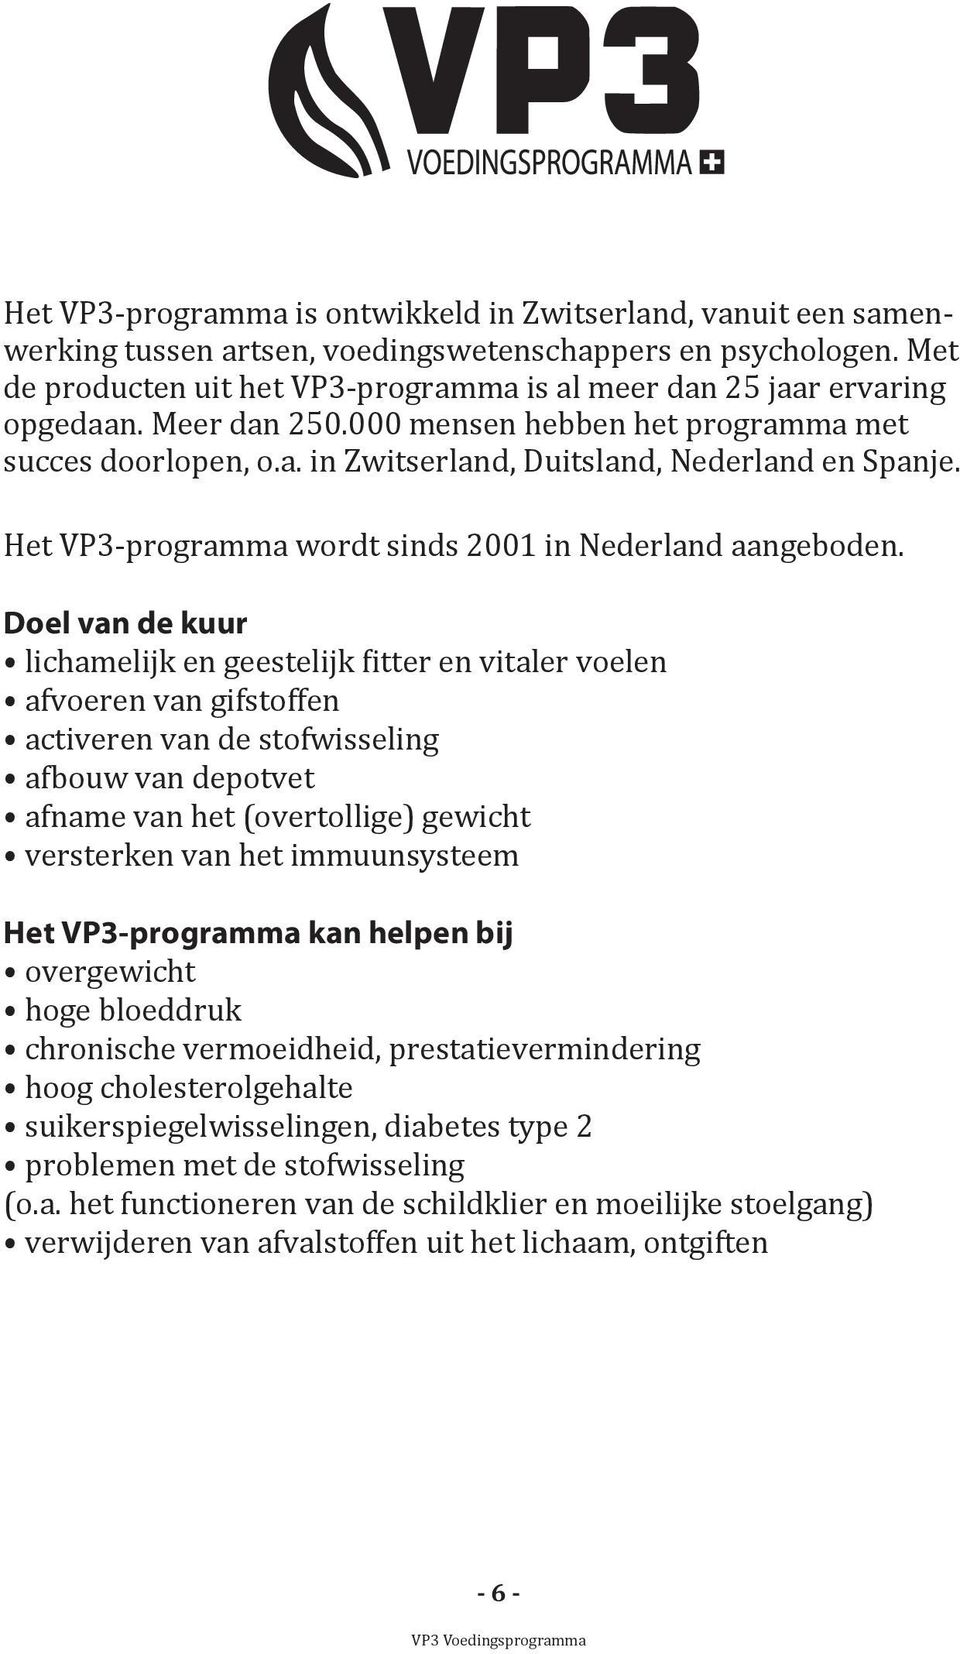 Het VP3-programma wordt sinds 2001 in Nederland aangeboden.